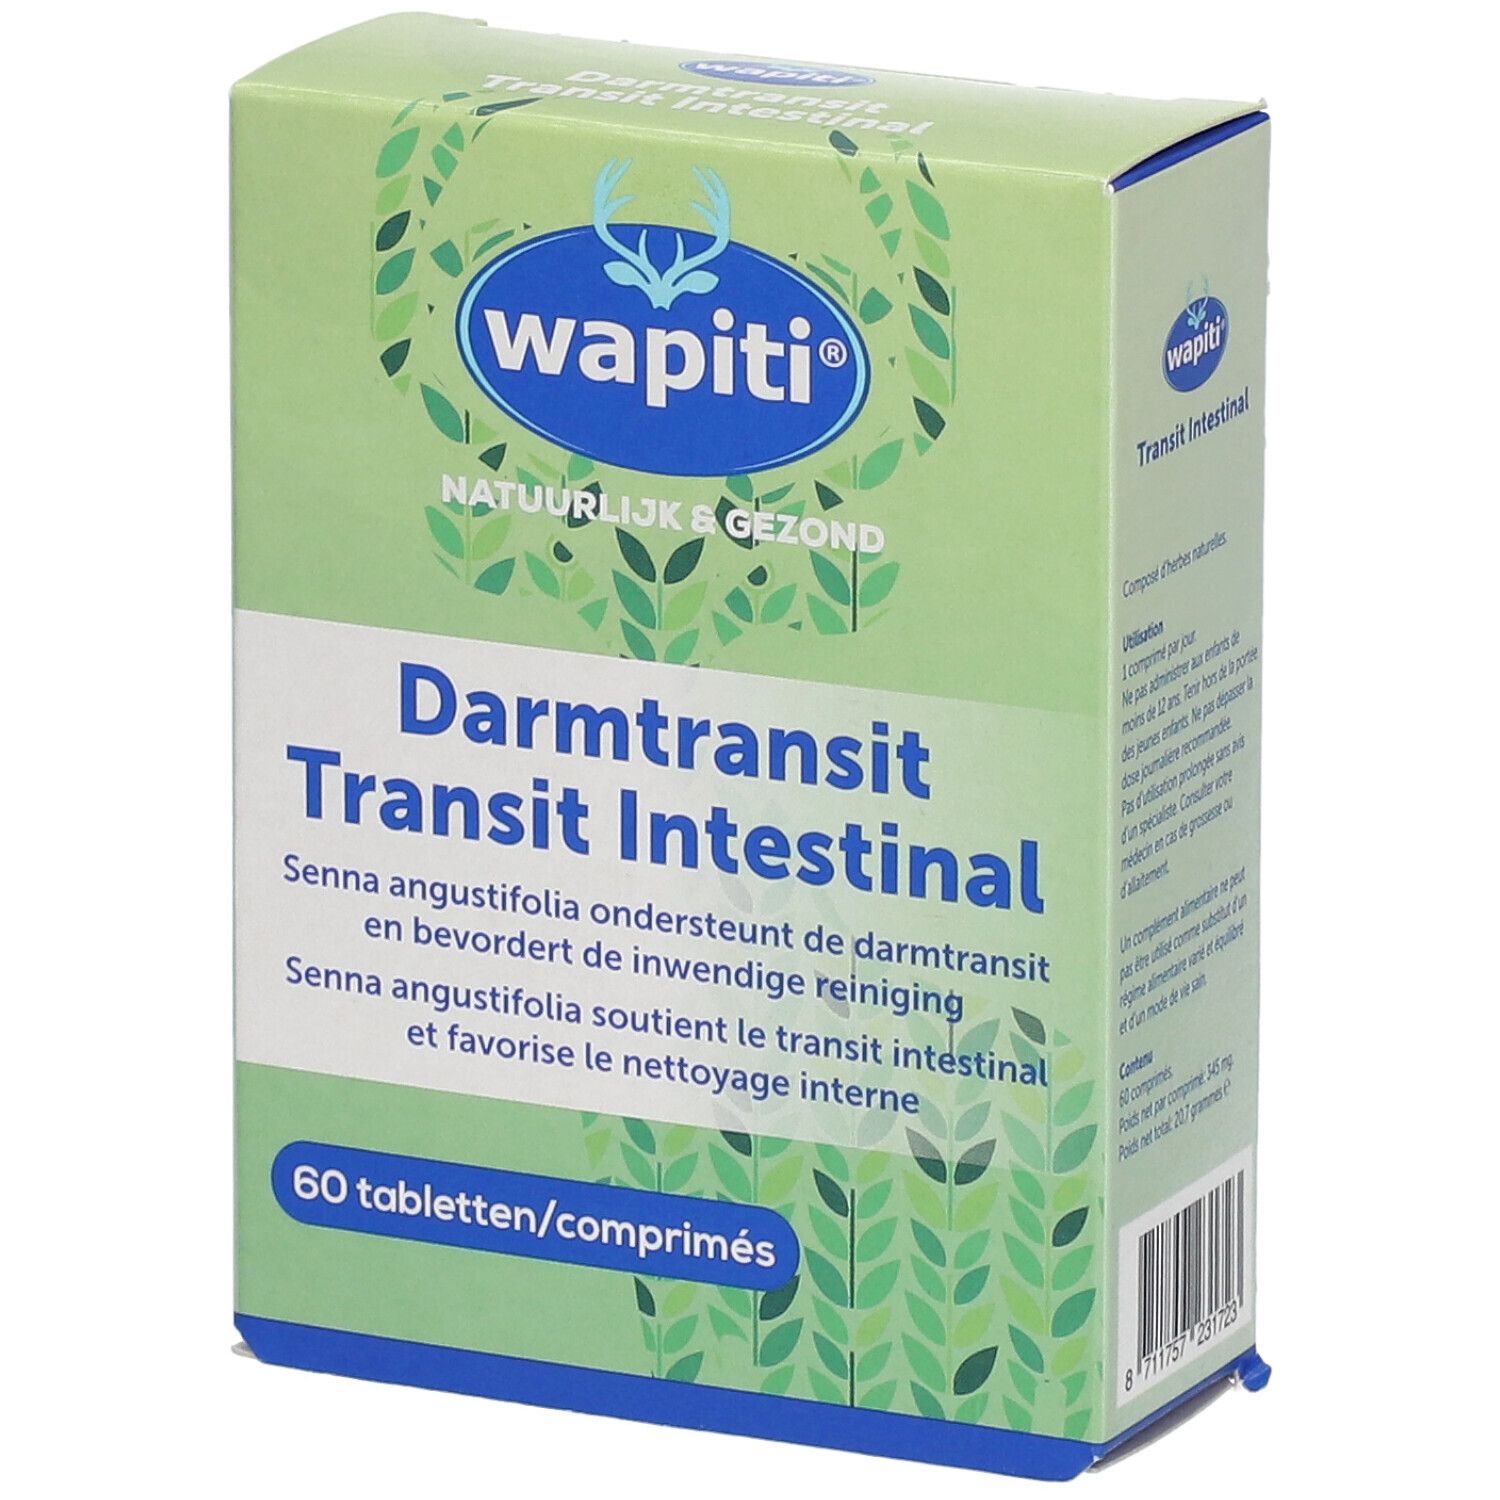 Wapiti® Transit Intestinal